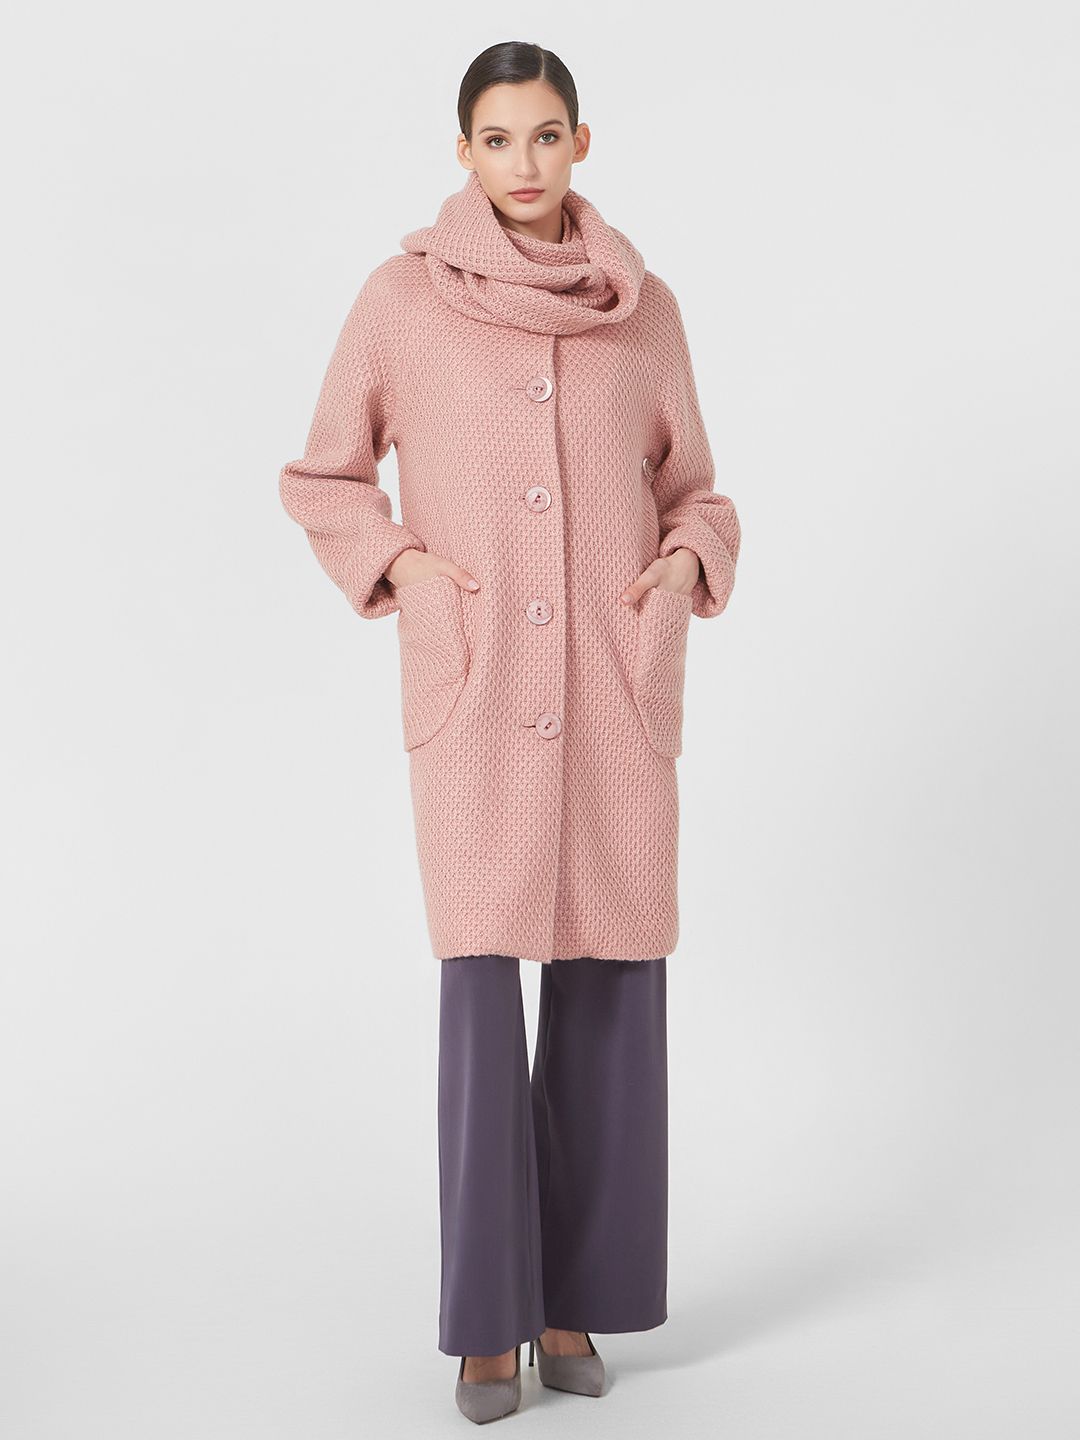 Пальто женское Lo 1241003 розовое 46 RU